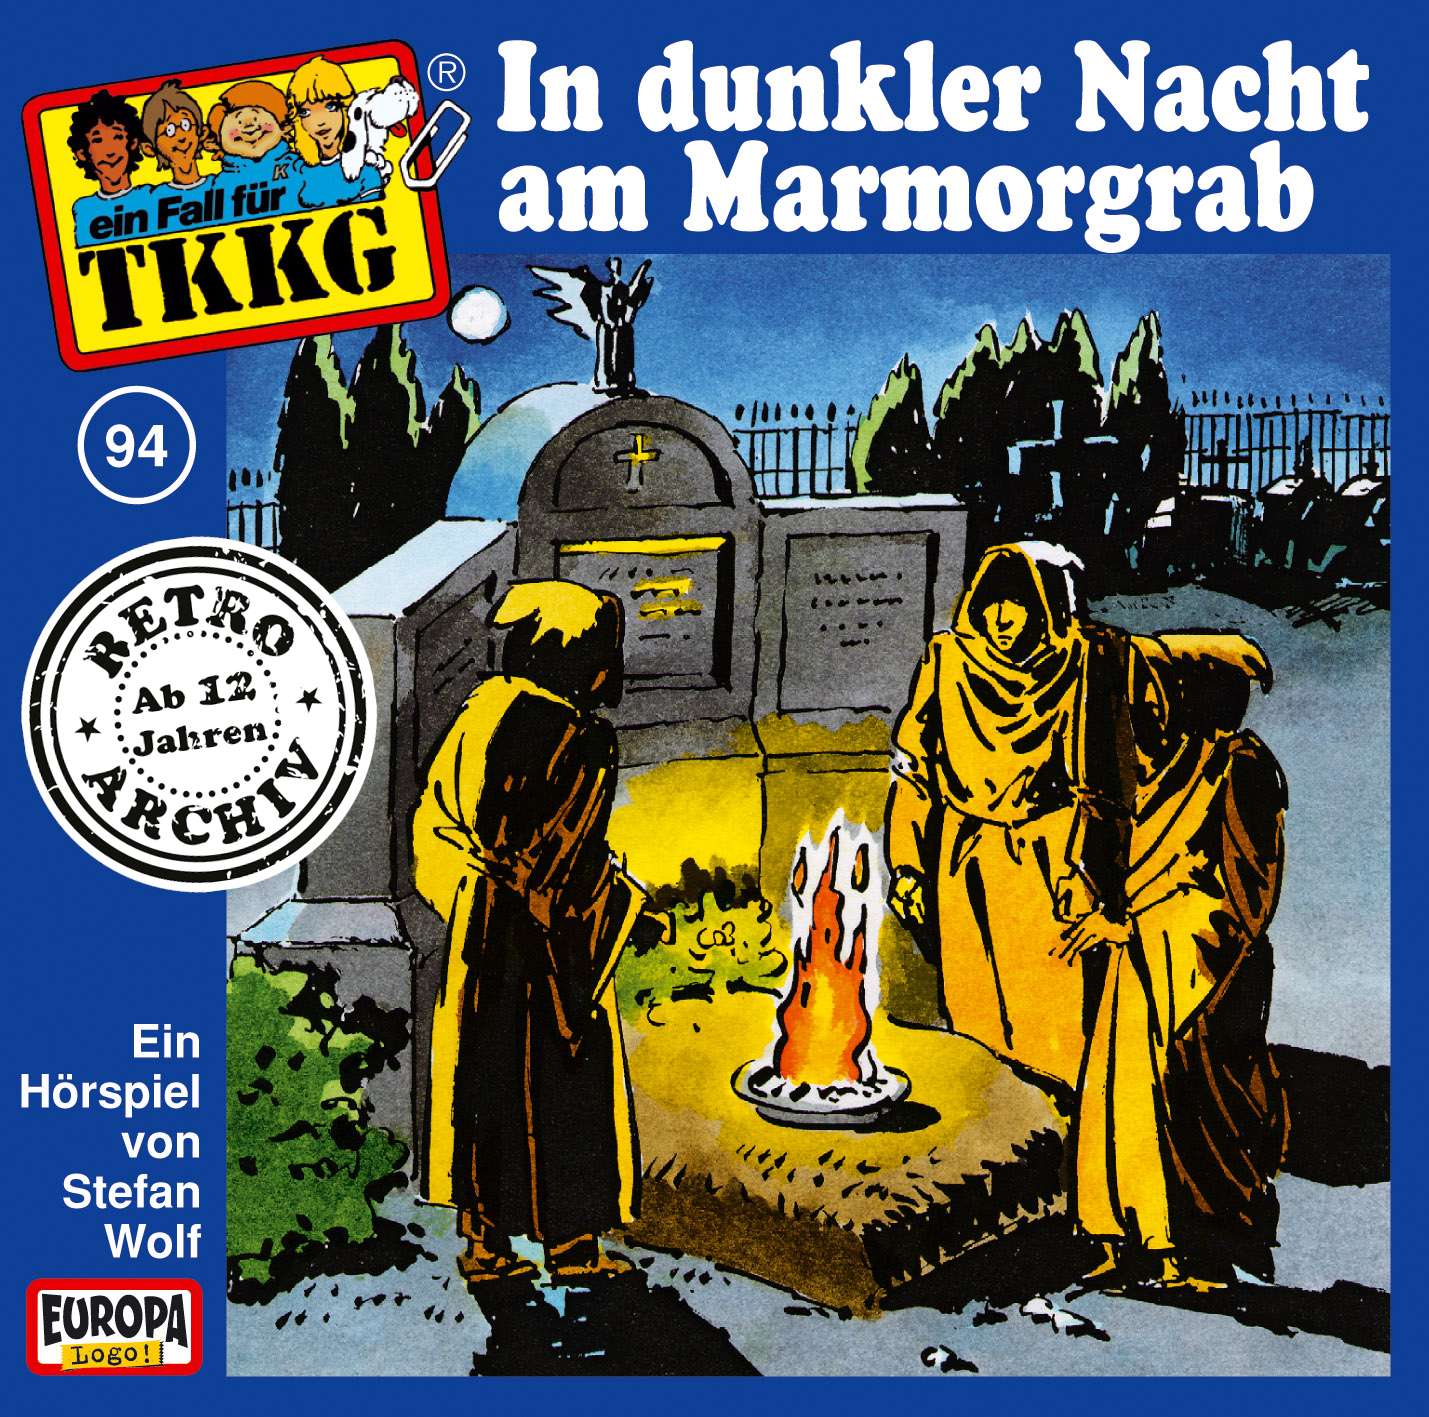 TKKG Retro-Archiv: In dunkler Nacht am Marmorgrab